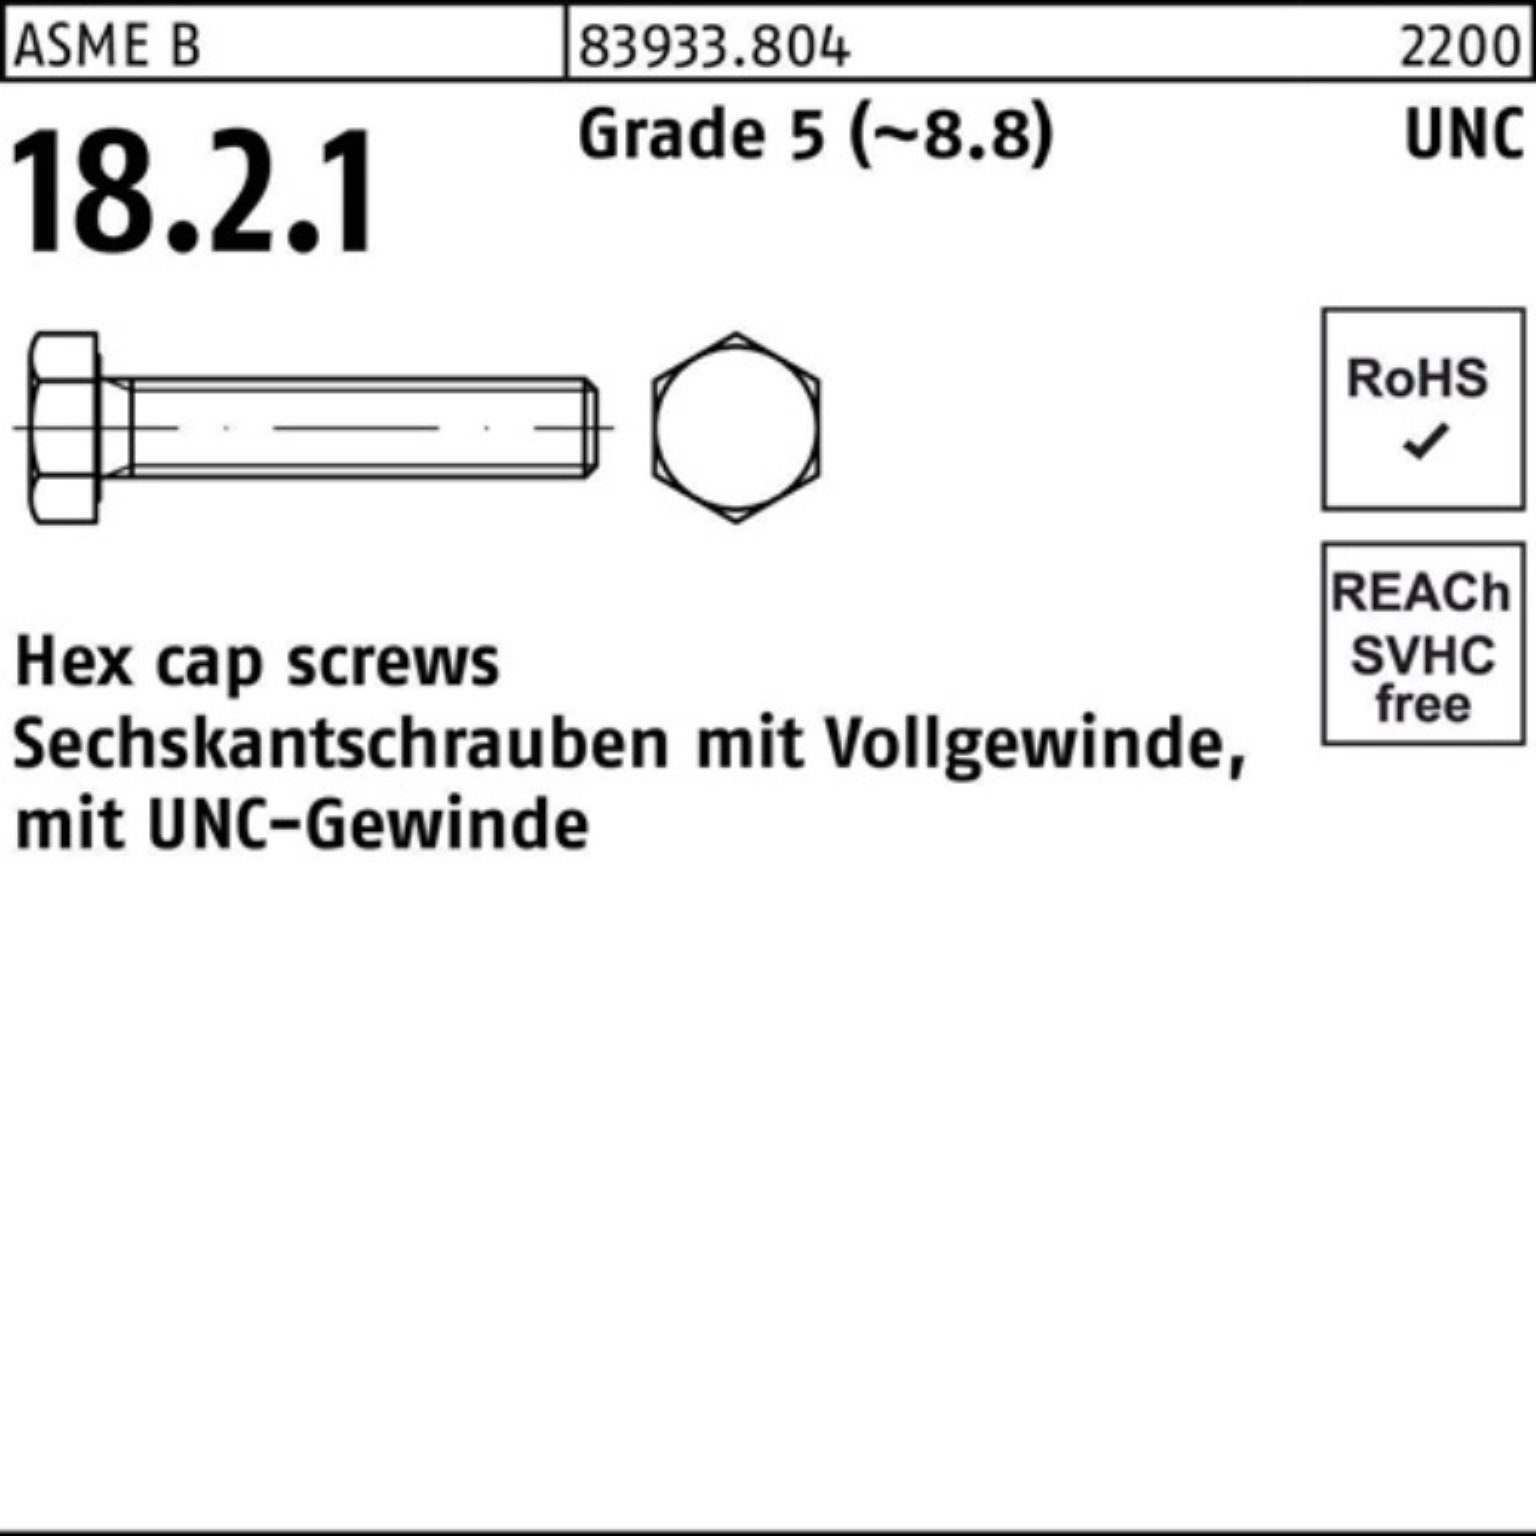 Reyher Sechskantschraube 100er Pack Sechskantschraube R 83933 UNC-Gewinde VG 5/16x 1 1/4 Grade